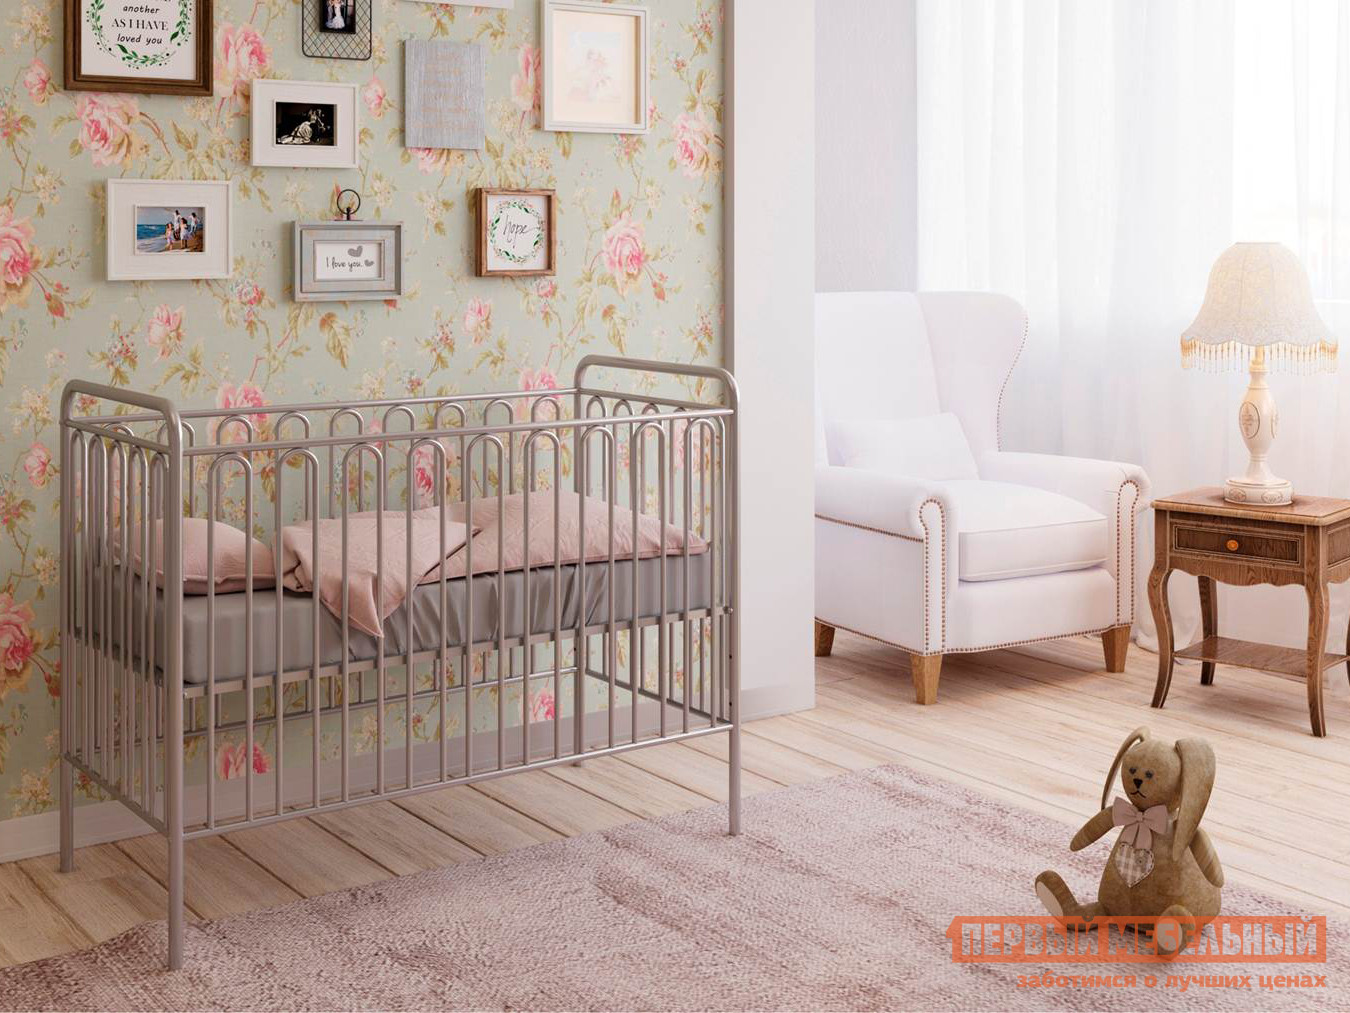 Кроватка для новорожденных  Винтаж-2 Серебро от Первый Мебельный